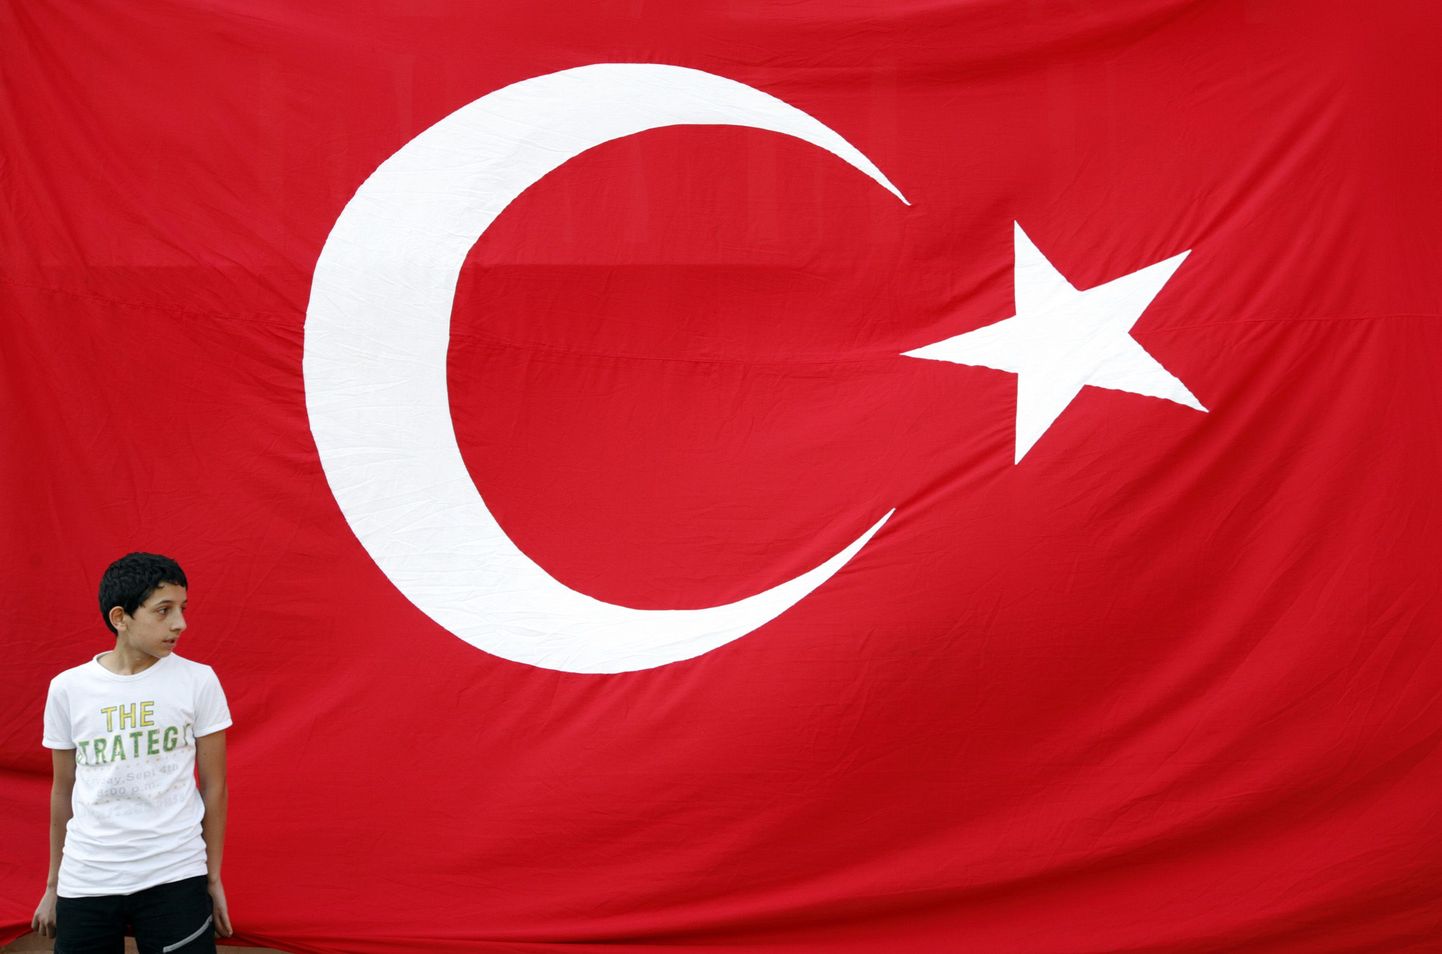 Türgi alustas Euroopa Liiduga liitumisläbirääkimisi 2005. aastal.